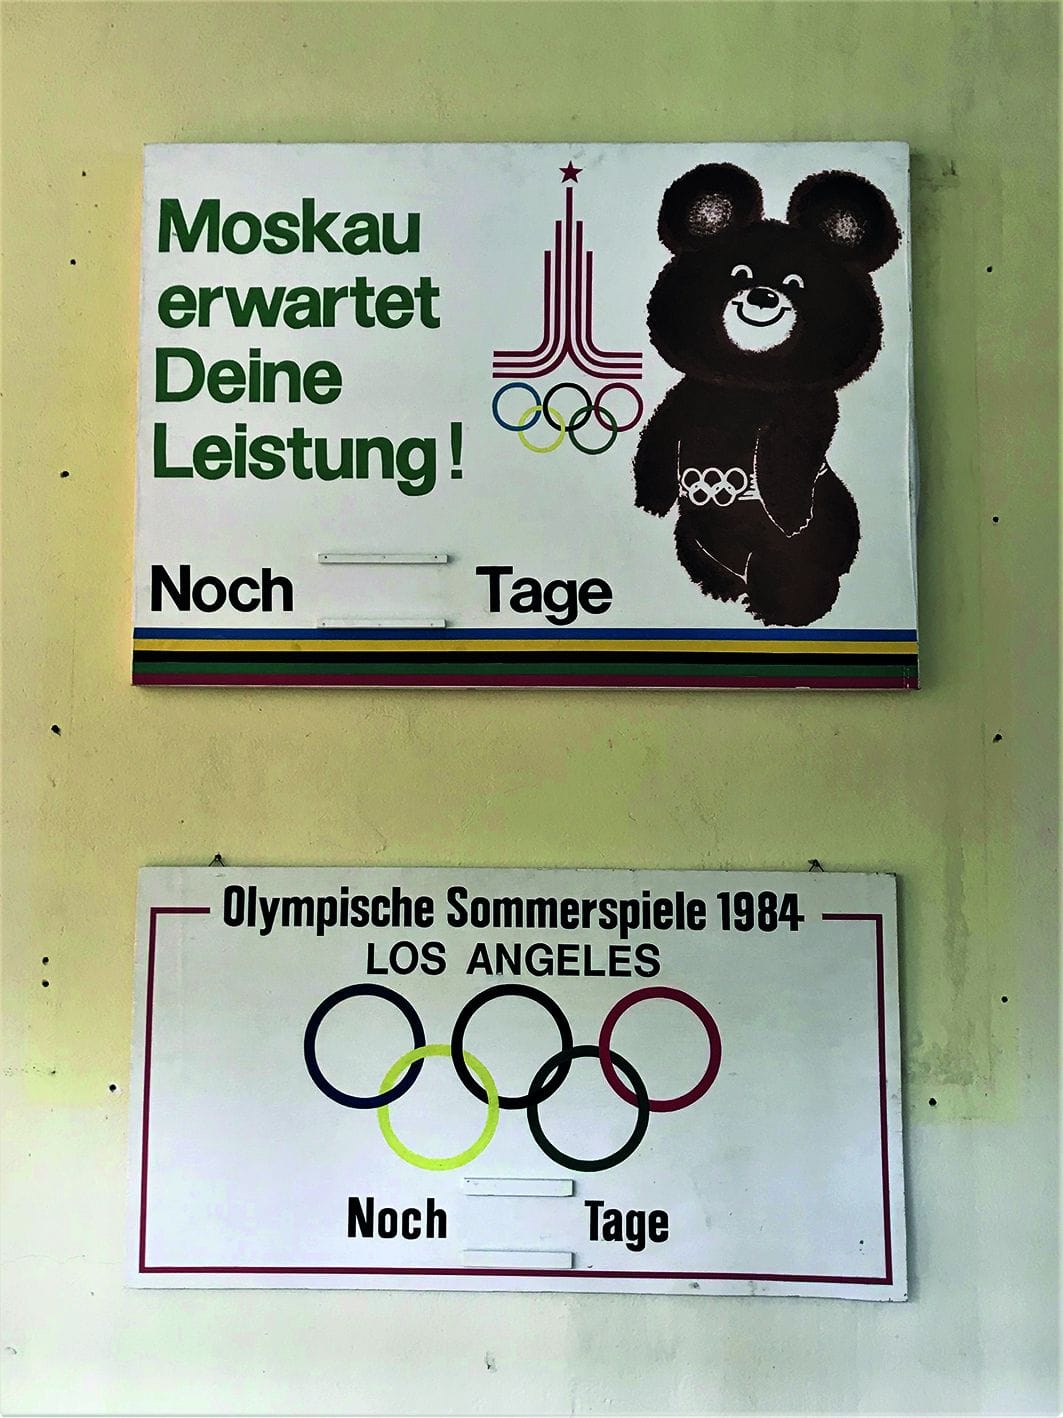 Leistungsdruck: Diese Art "Wandkalender" sollte die Athleten im Trainingszentrum des Deutschen Turn- und Sportbundes in Kienbaum motivieren. Zu Olympia in Los Angeles 1984 reiste die Mehrzahl der Ostblock-Athleten wegen einer Verhärtung des Kalten Krieges nicht an.